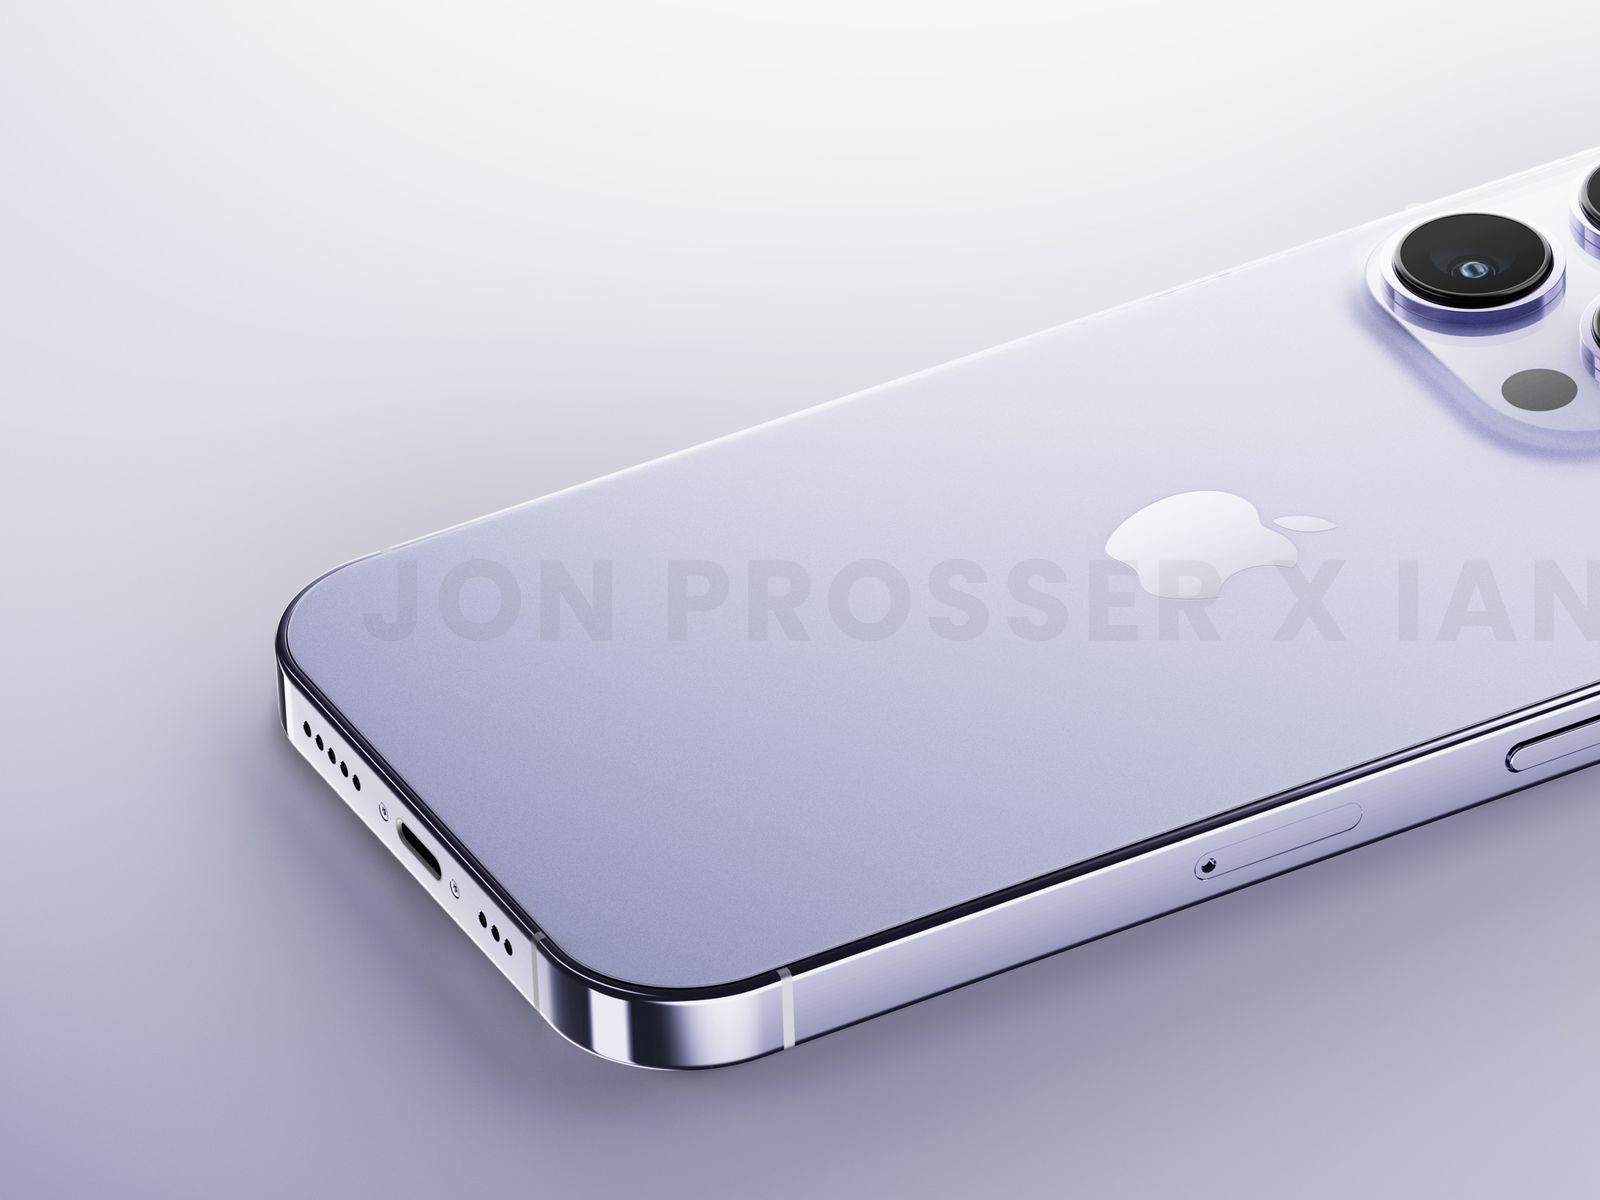 iPhone 14 Pro: Với iPhone 14 Pro, bạn sẽ được trải nghiệm những tính năng công nghệ tiên tiến nhất hiện nay. Từ màn hình OLED, camera cao cấp, bộ vi xử lý mạnh mẽ cho đến khả năng chống nước và bụi bẩn. Đây chắc chắn là một sản phẩm đáng để sở hữu.